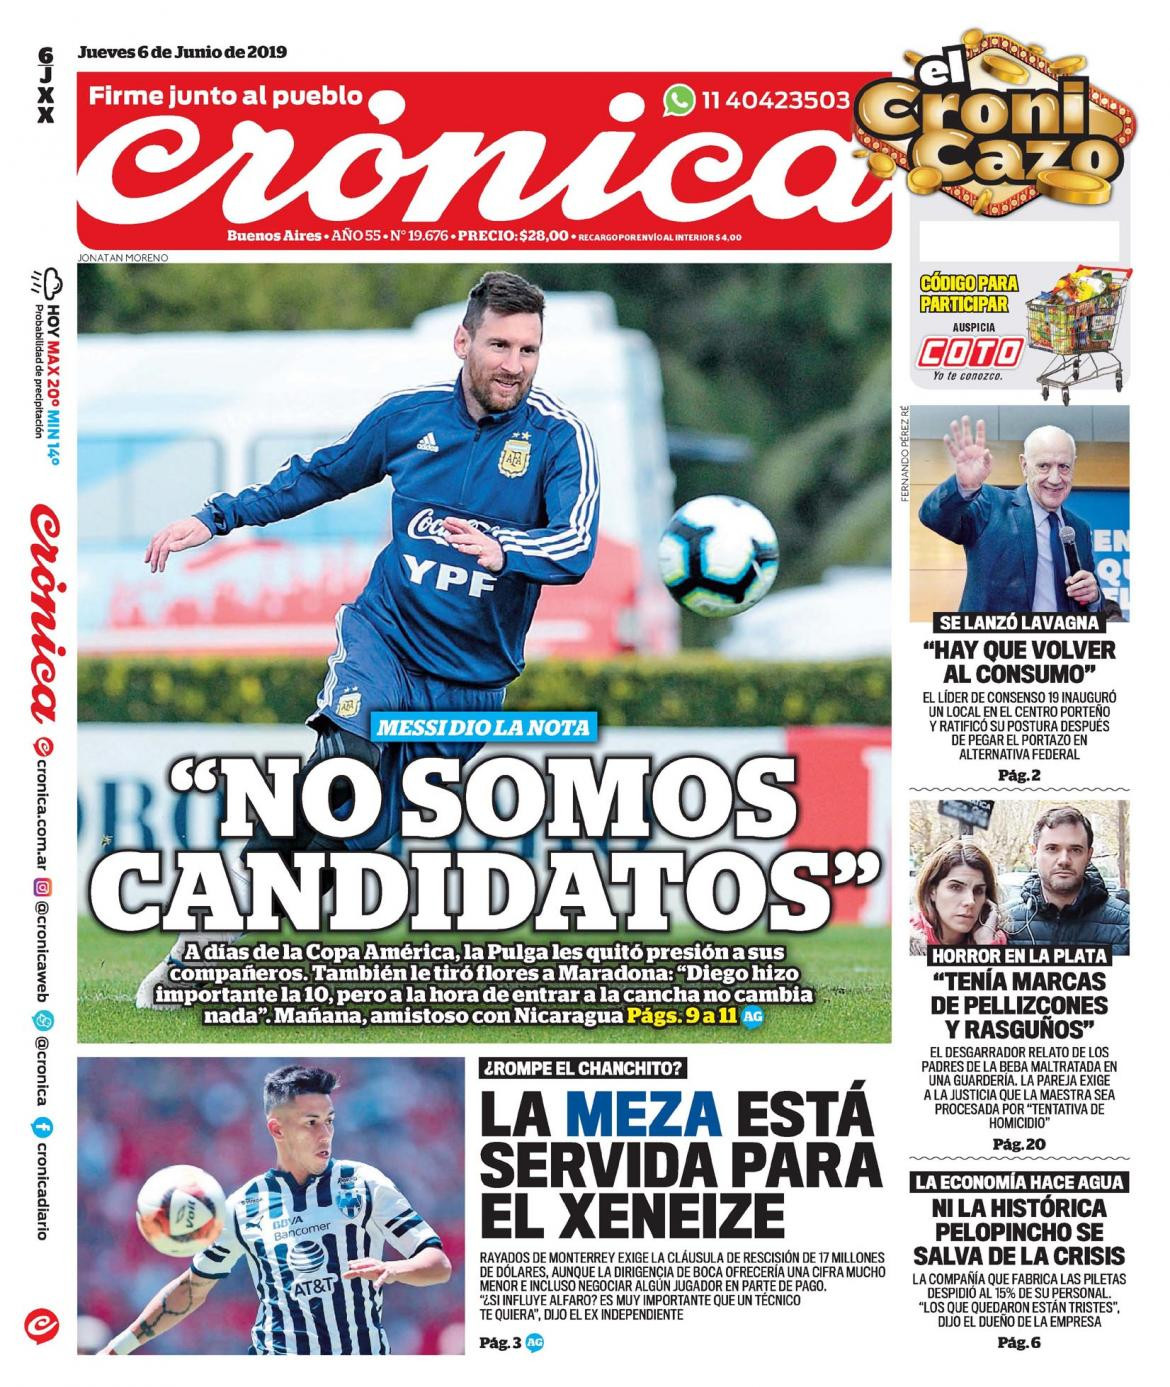 Tapas de diarios - Crónica jueves 06-06-19